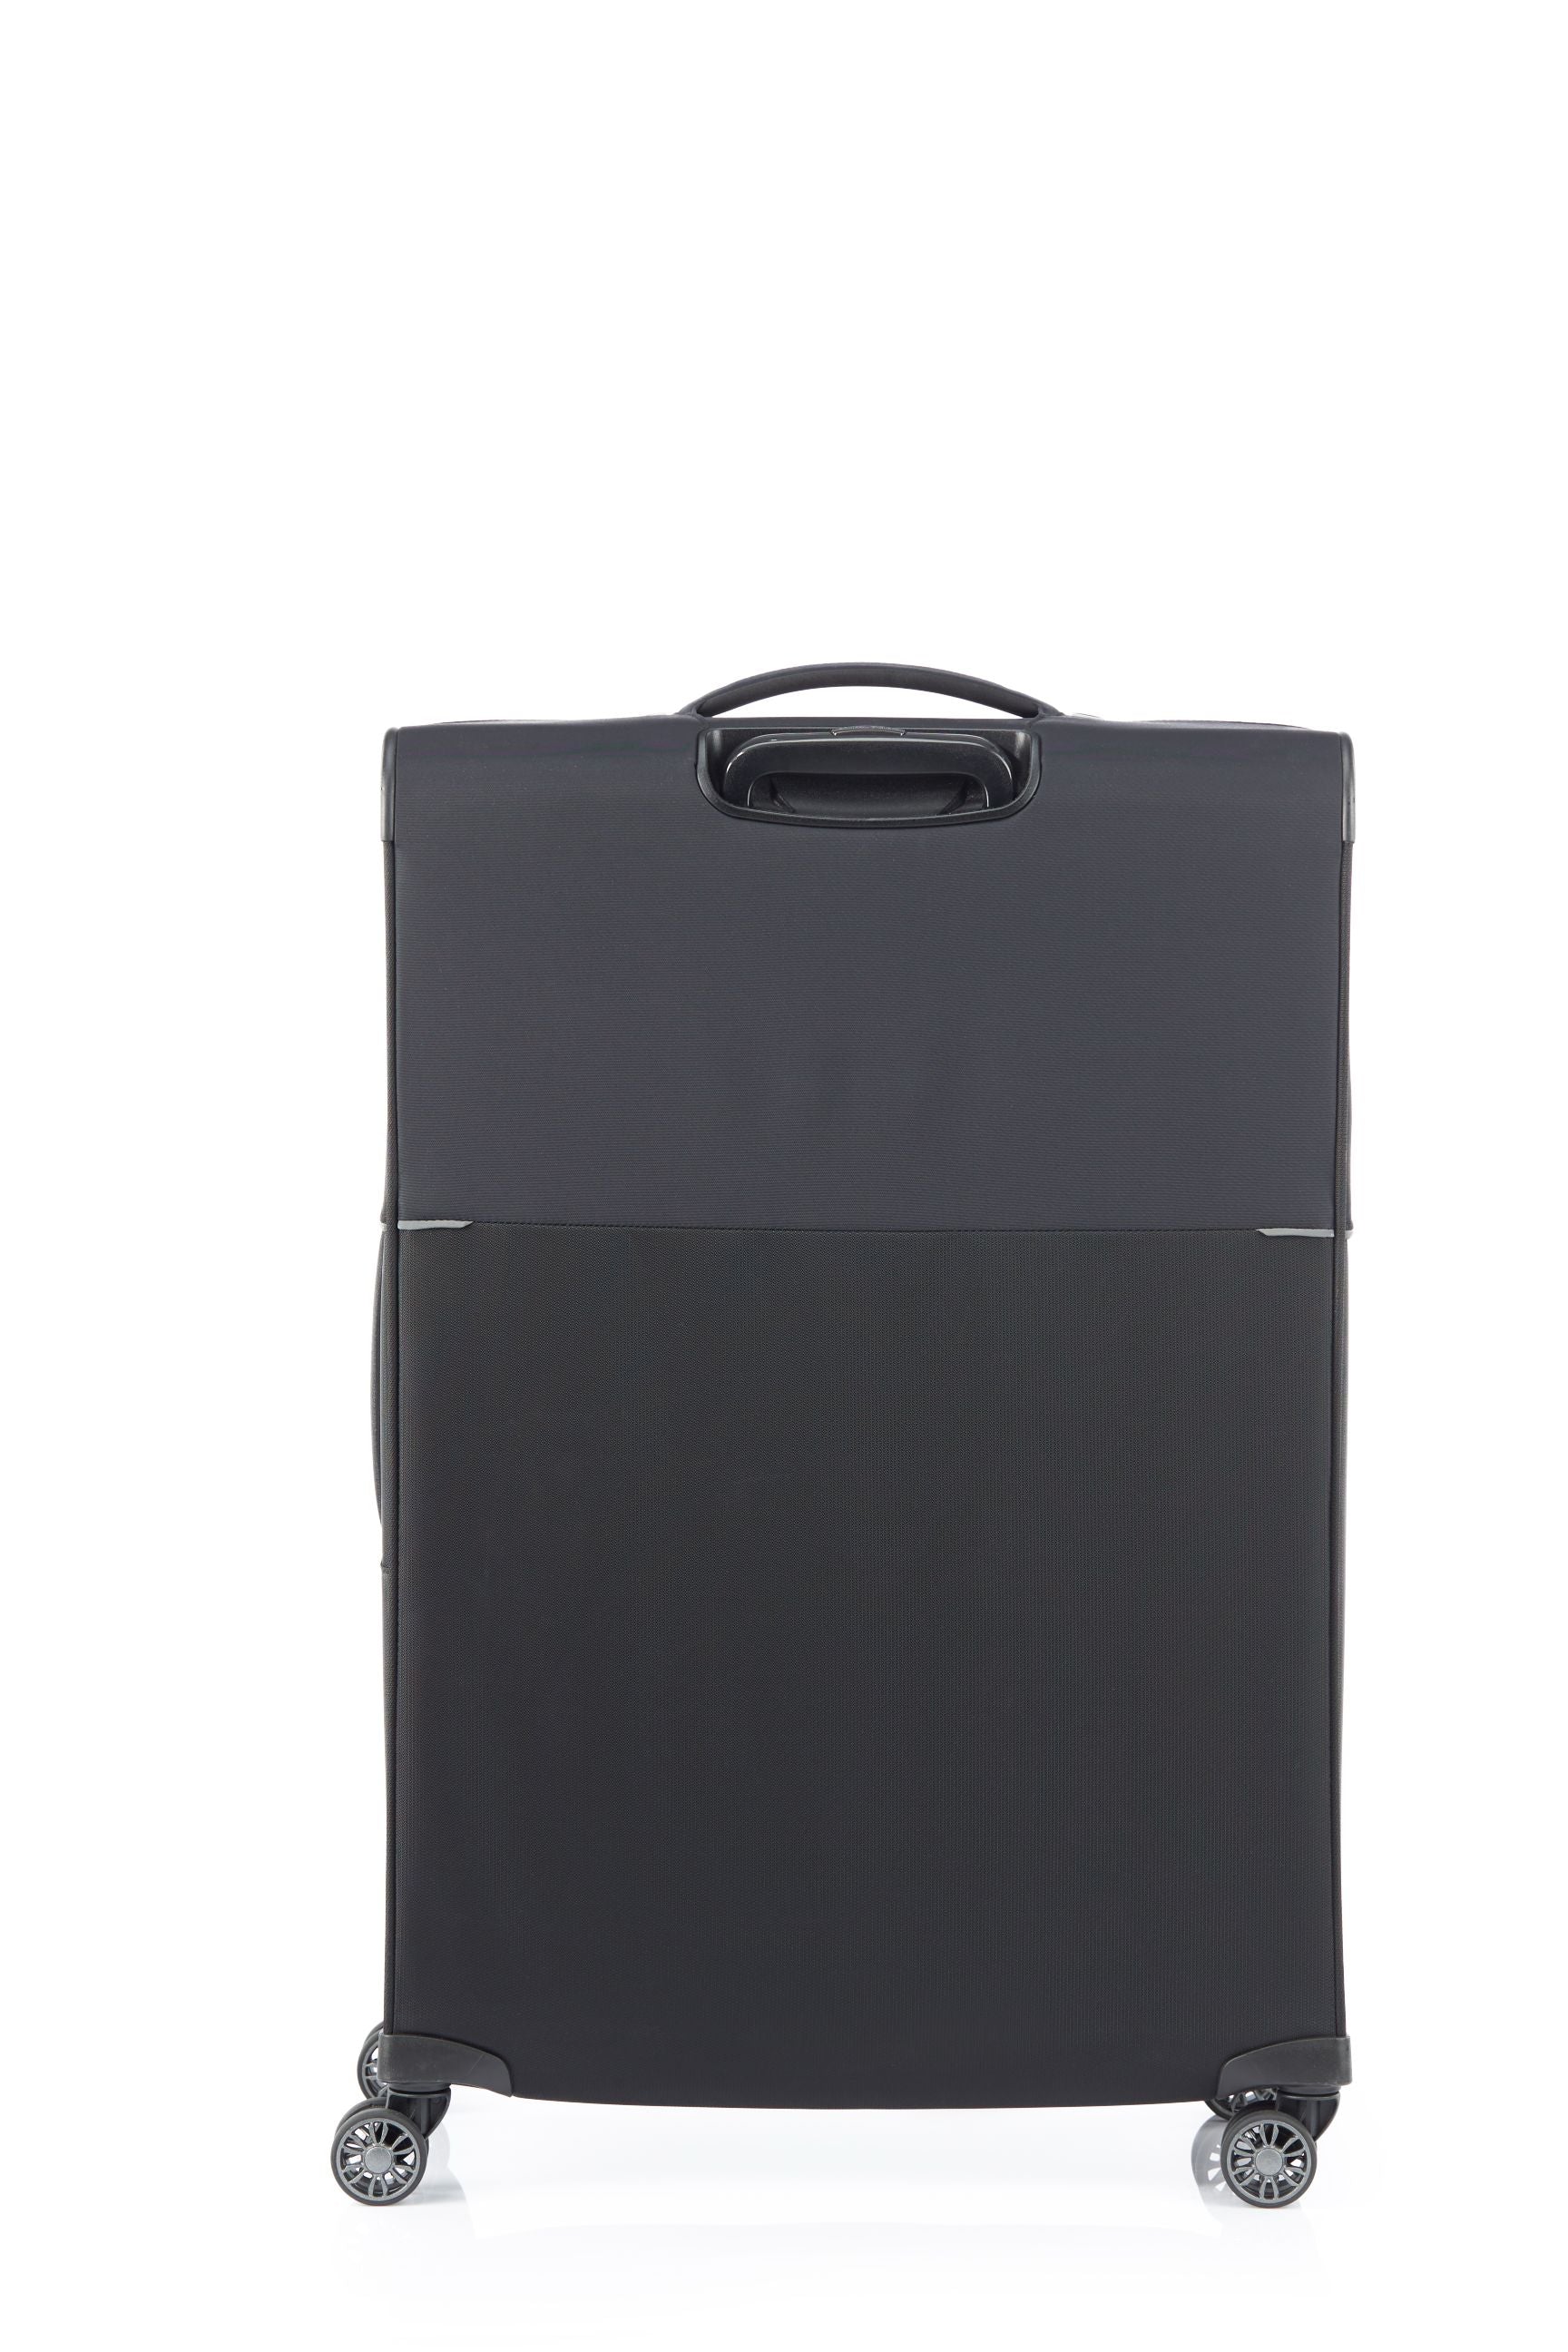 Samsonite - 73HR 78cm Large Suitcase - Black-5